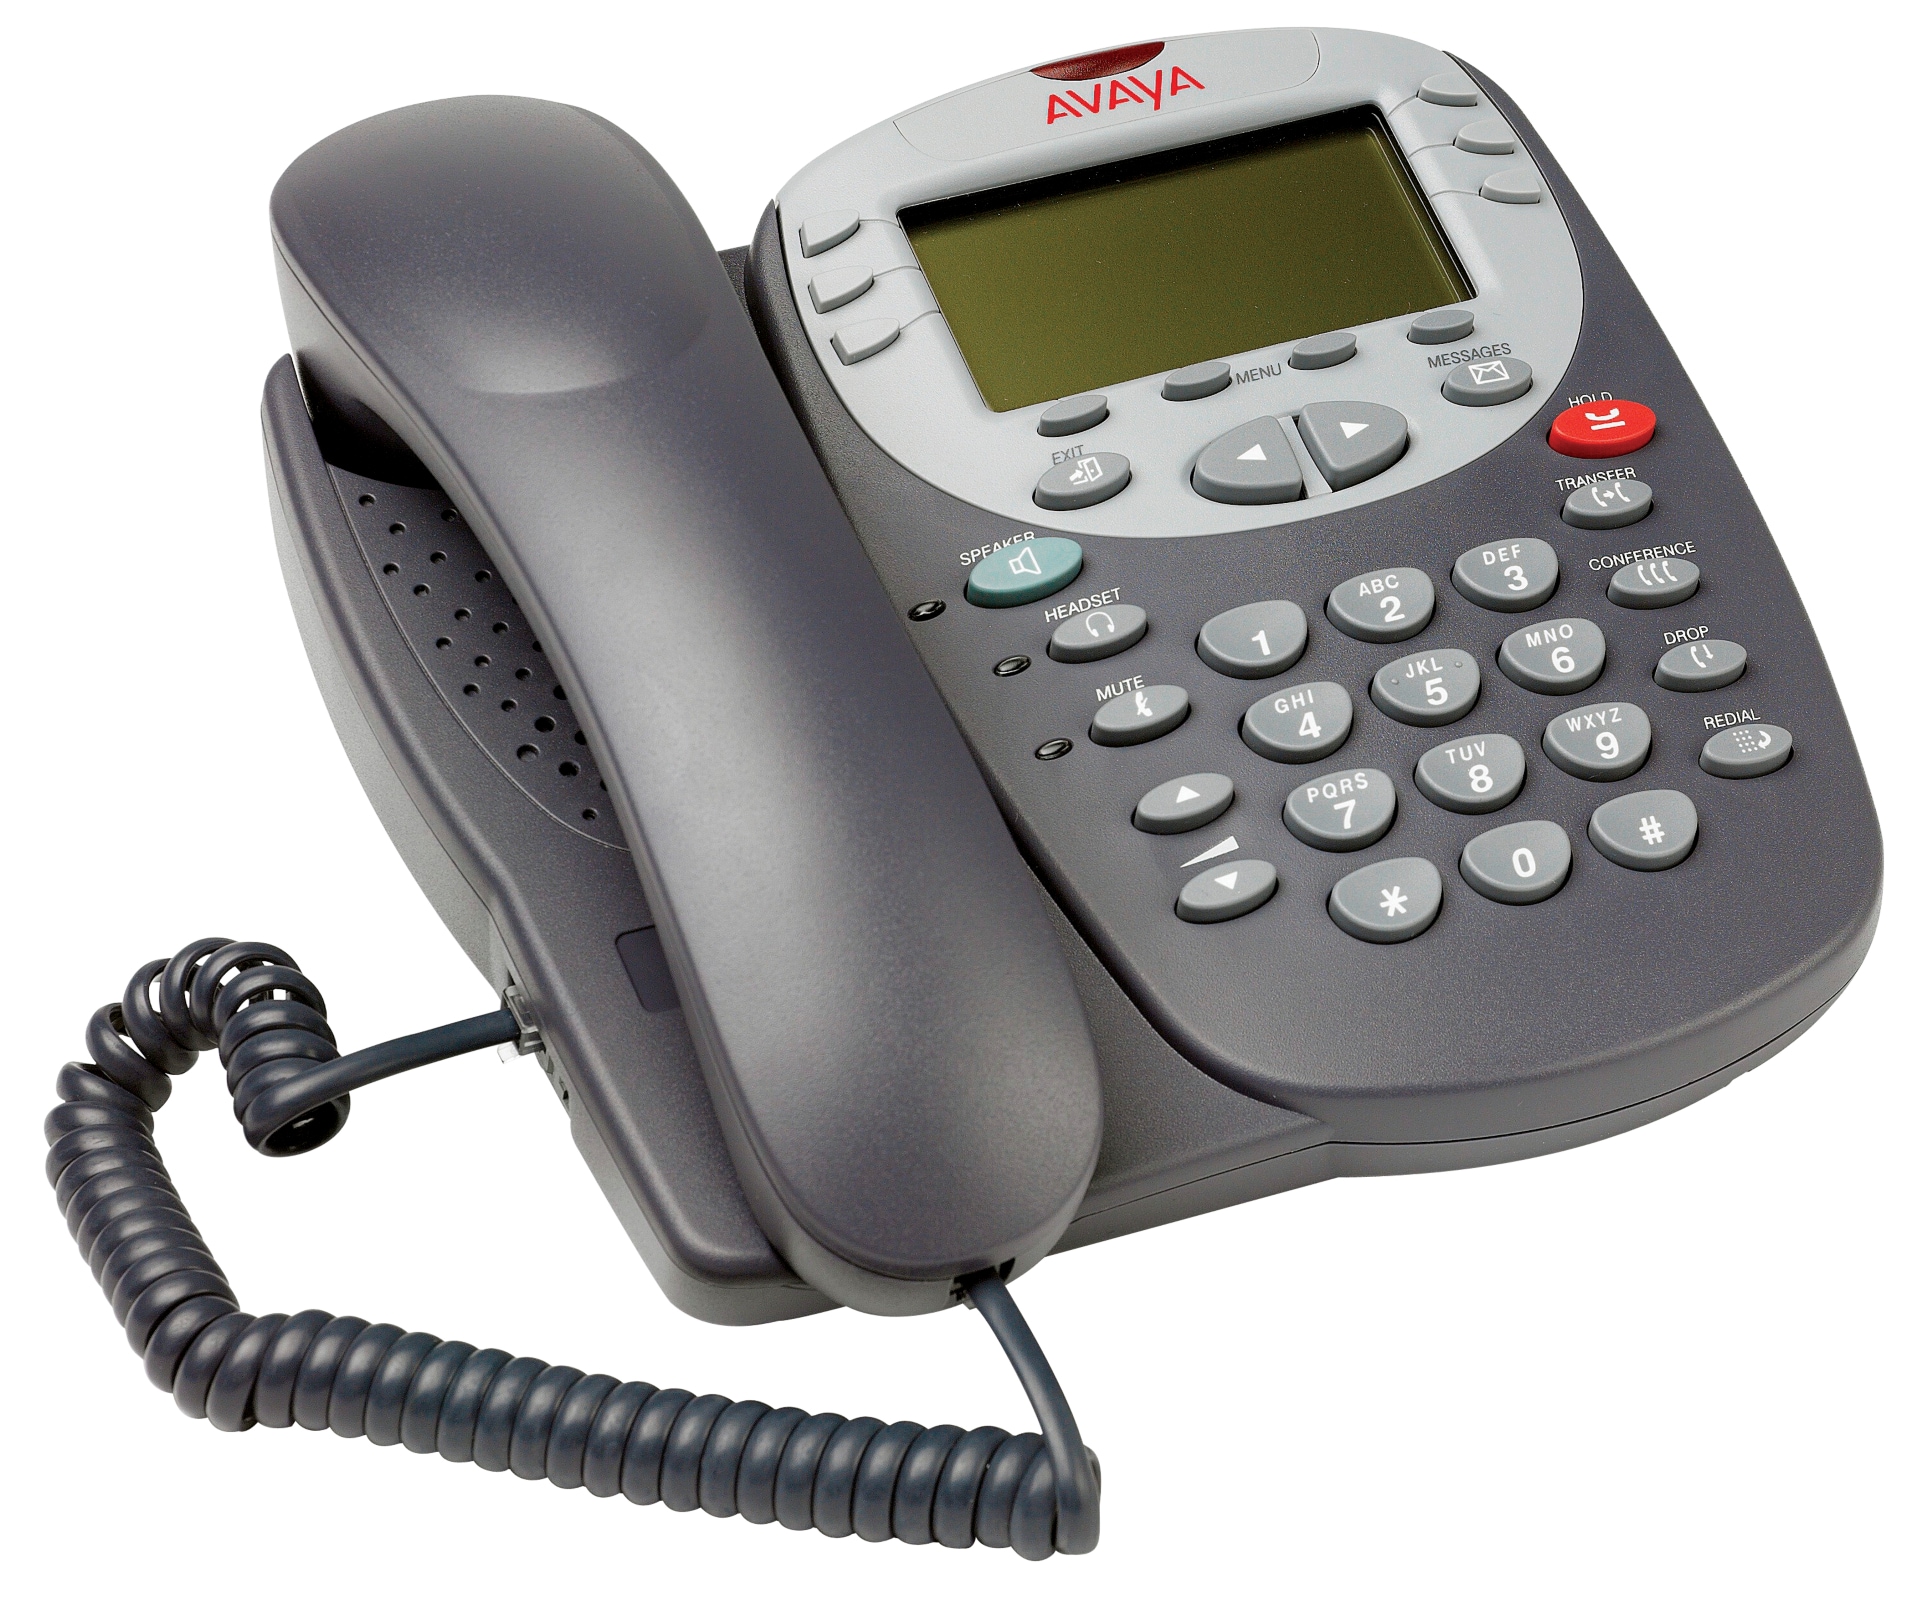 Avaya 5410 2-line digital phone